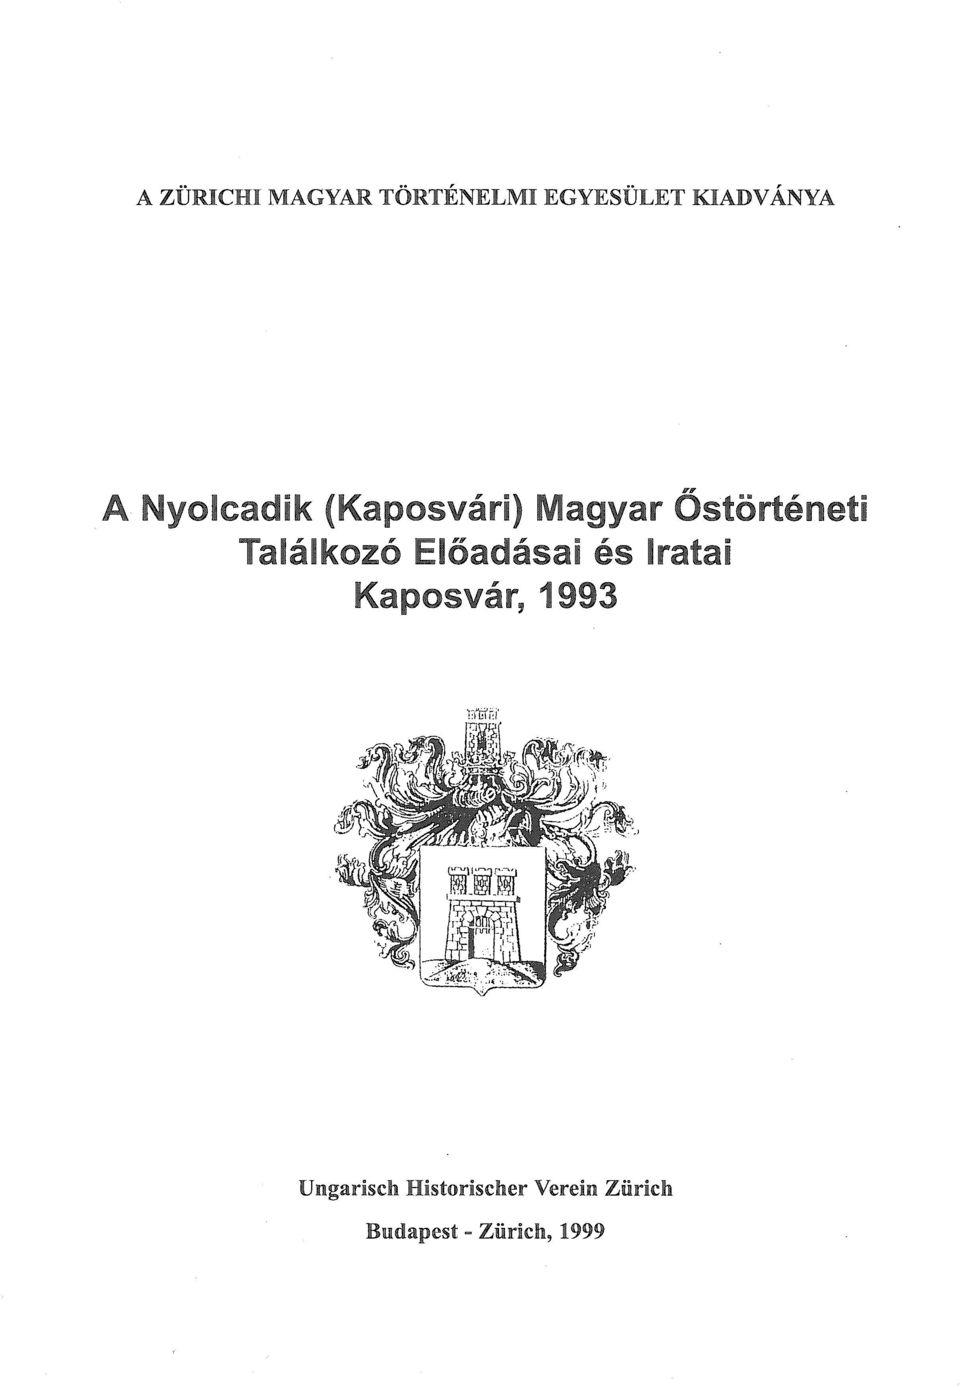 Előadásai és Iratai Kaposvár, 1993 1?